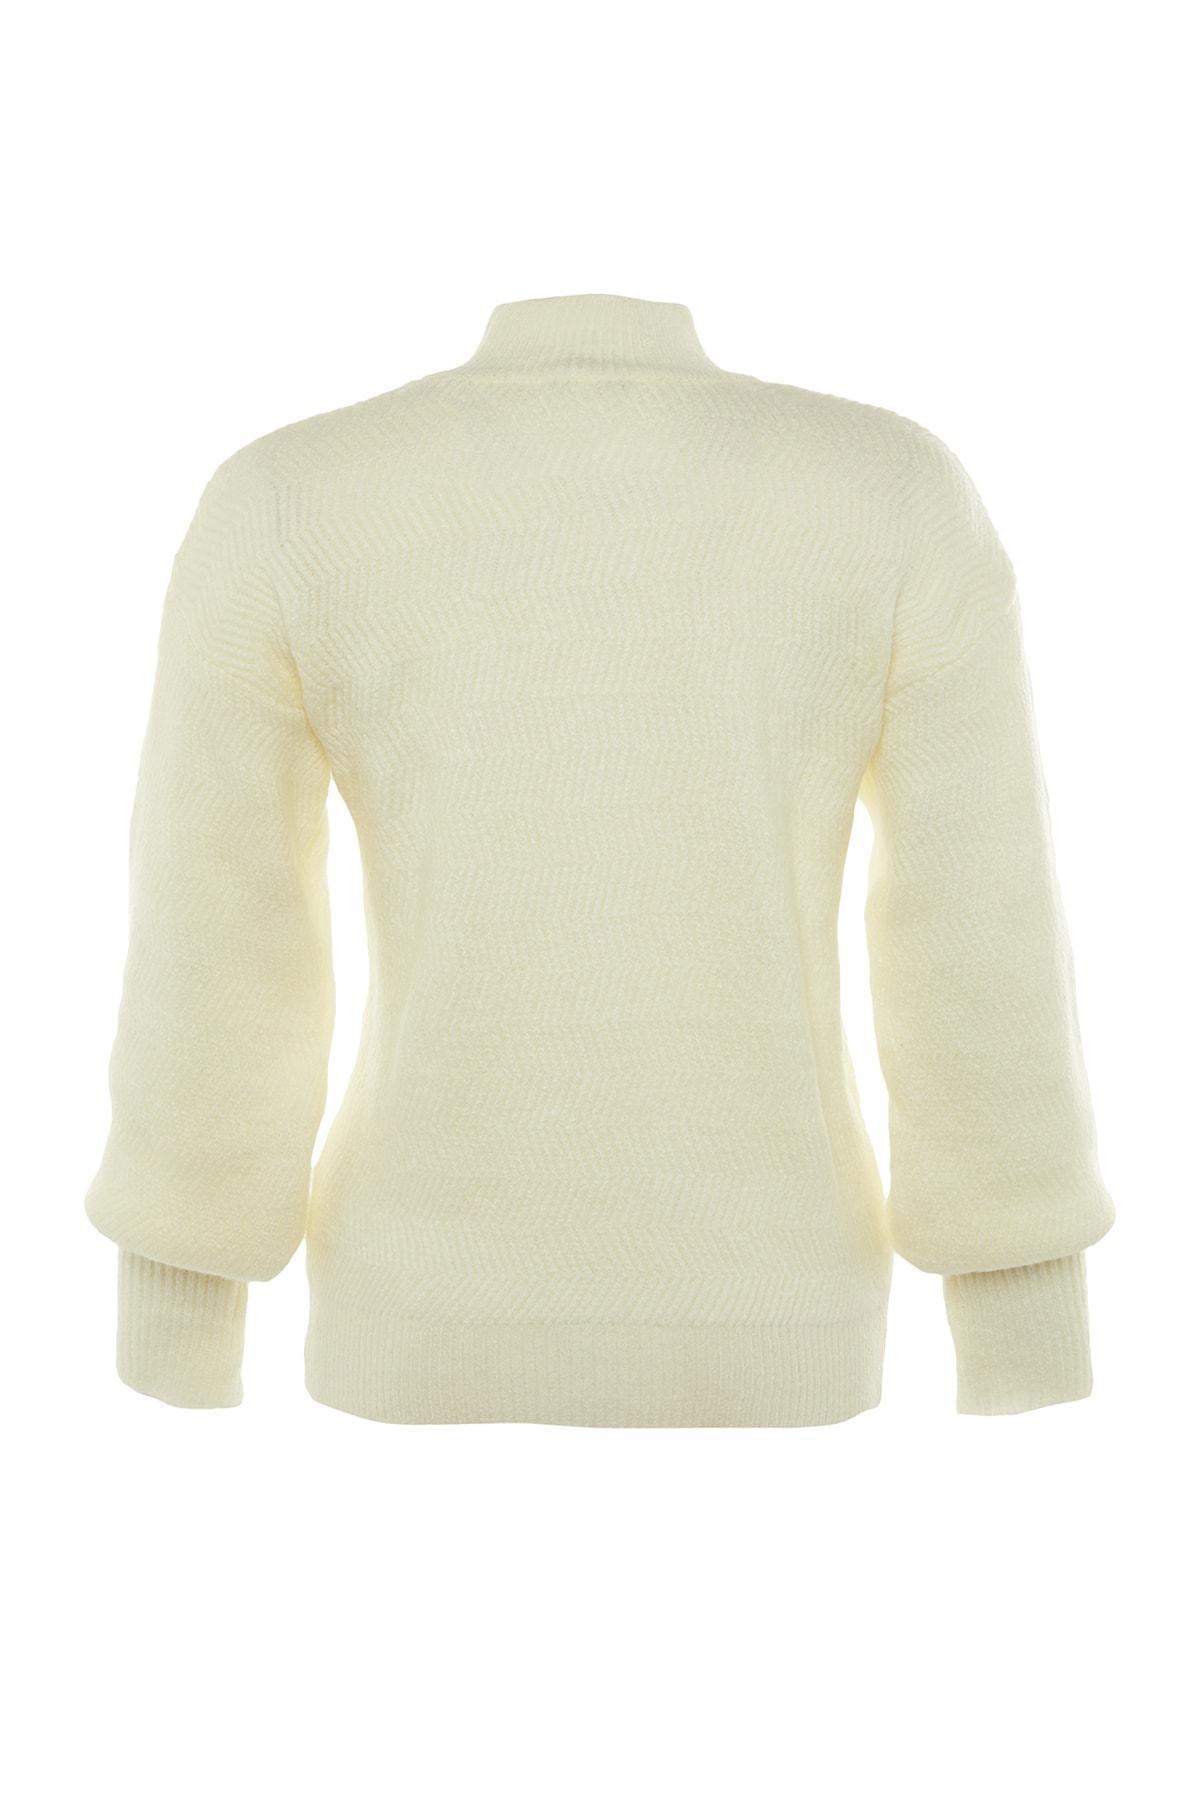 Trendyol - White Regular Sweater